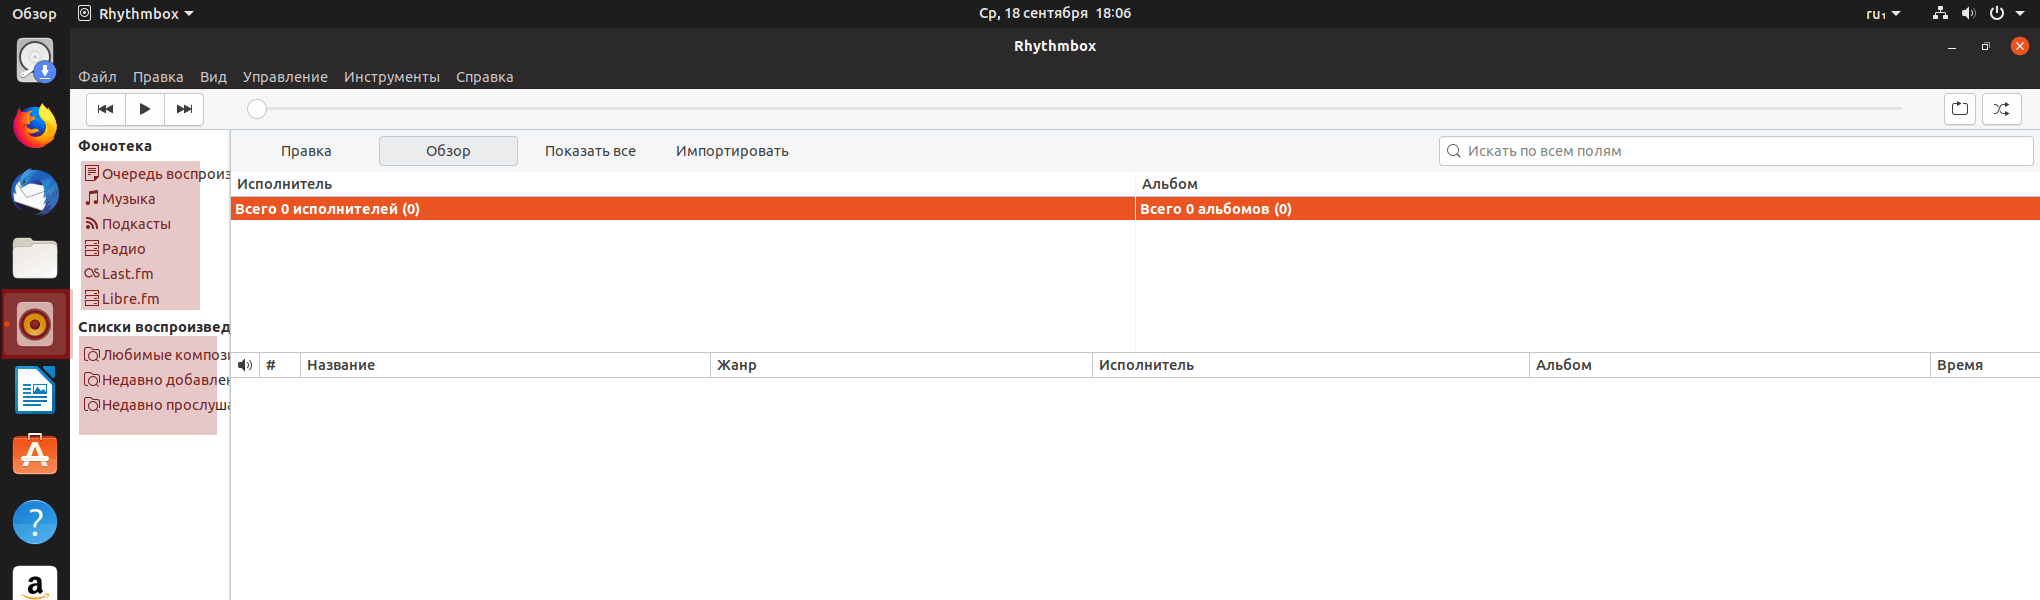 Установка ubuntu server 16.04.4 lts | itdeer.ru